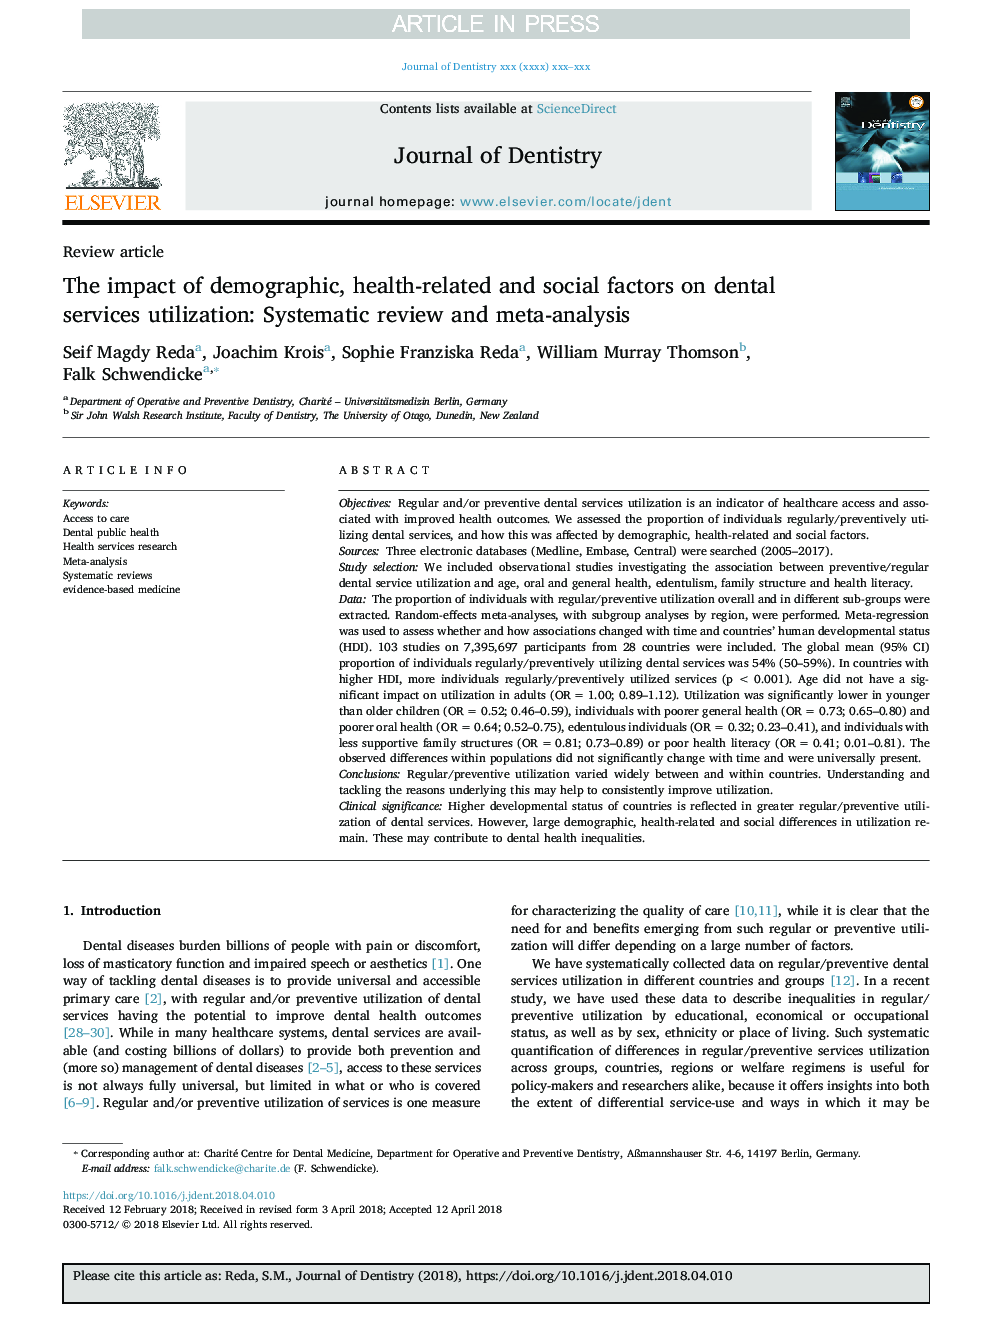 تأثیر عوامل جمعیت شناختی، بهداشتی و اجتماعی بر استفاده از خدمات دندانپزشکی: بررسی سیستماتیک و متاآنالیز 